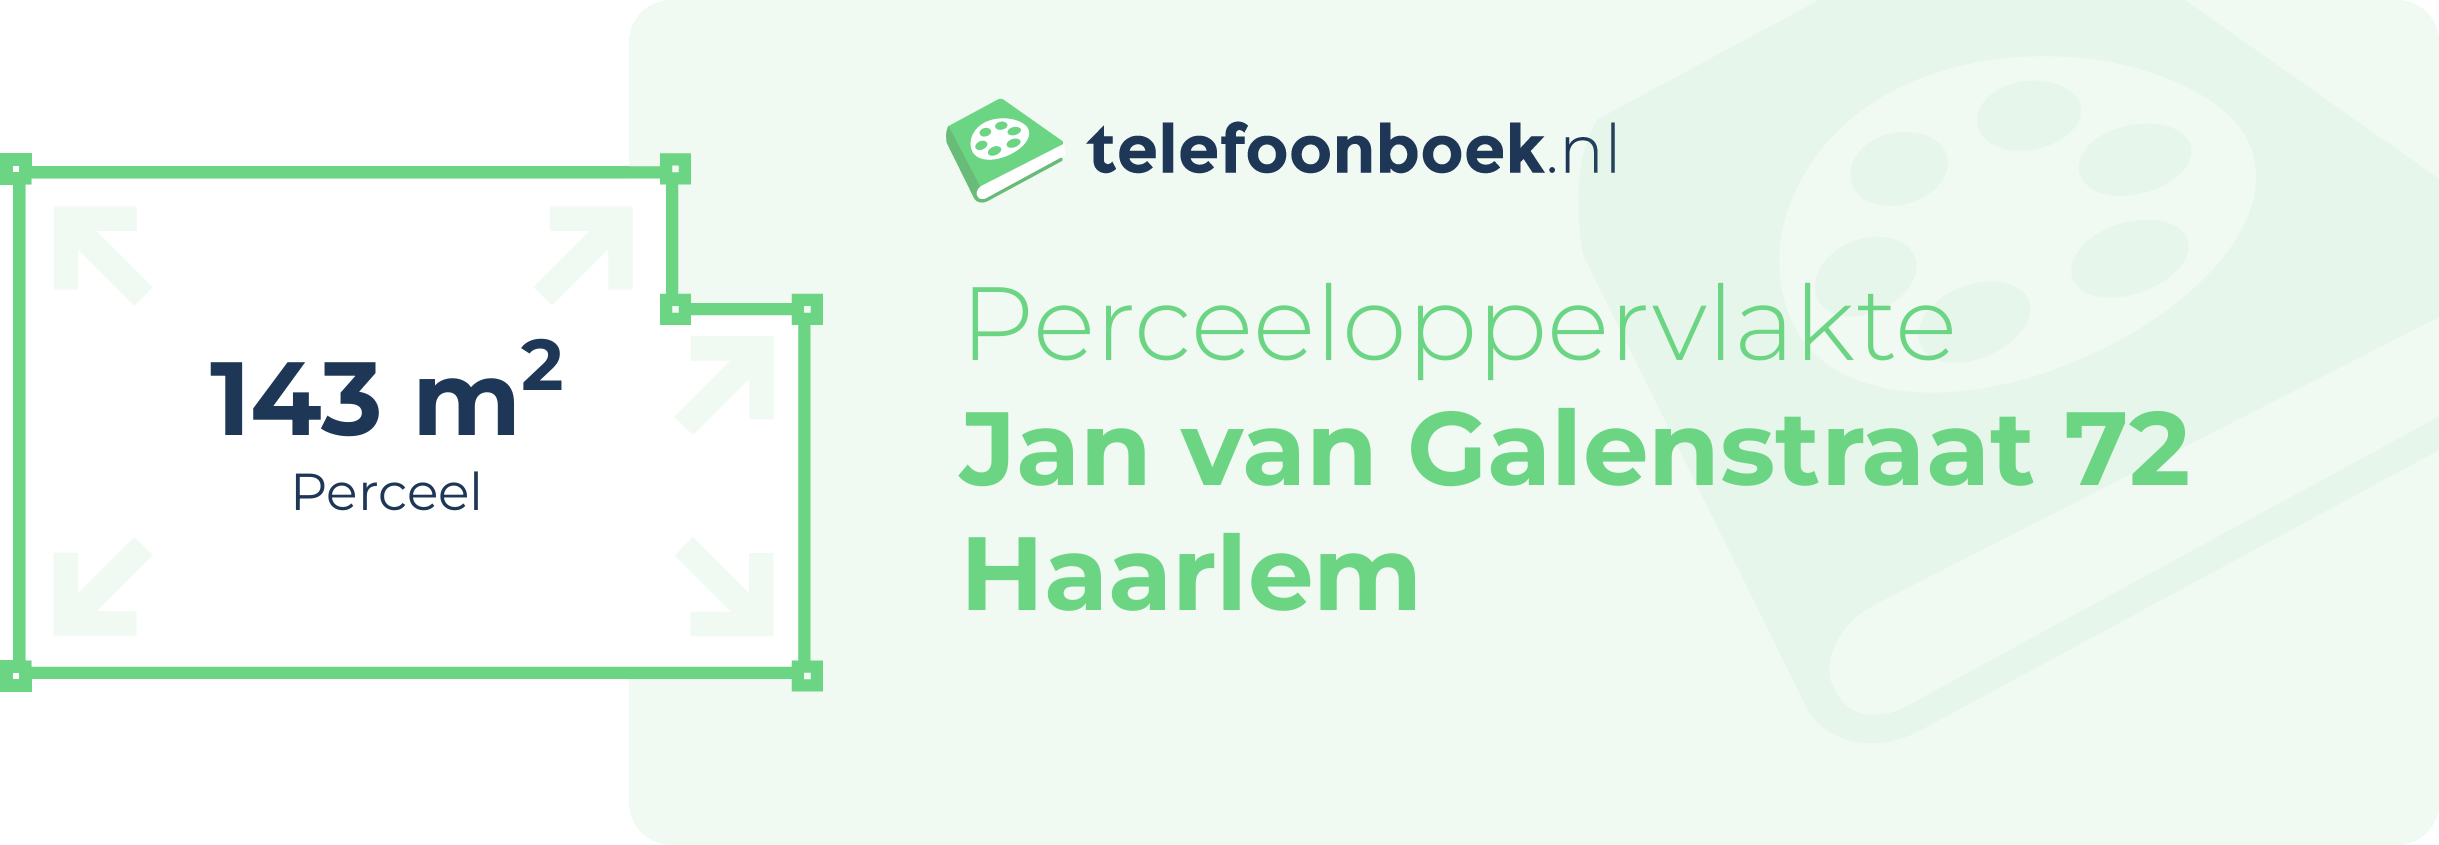 Perceeloppervlakte Jan Van Galenstraat 72 Haarlem